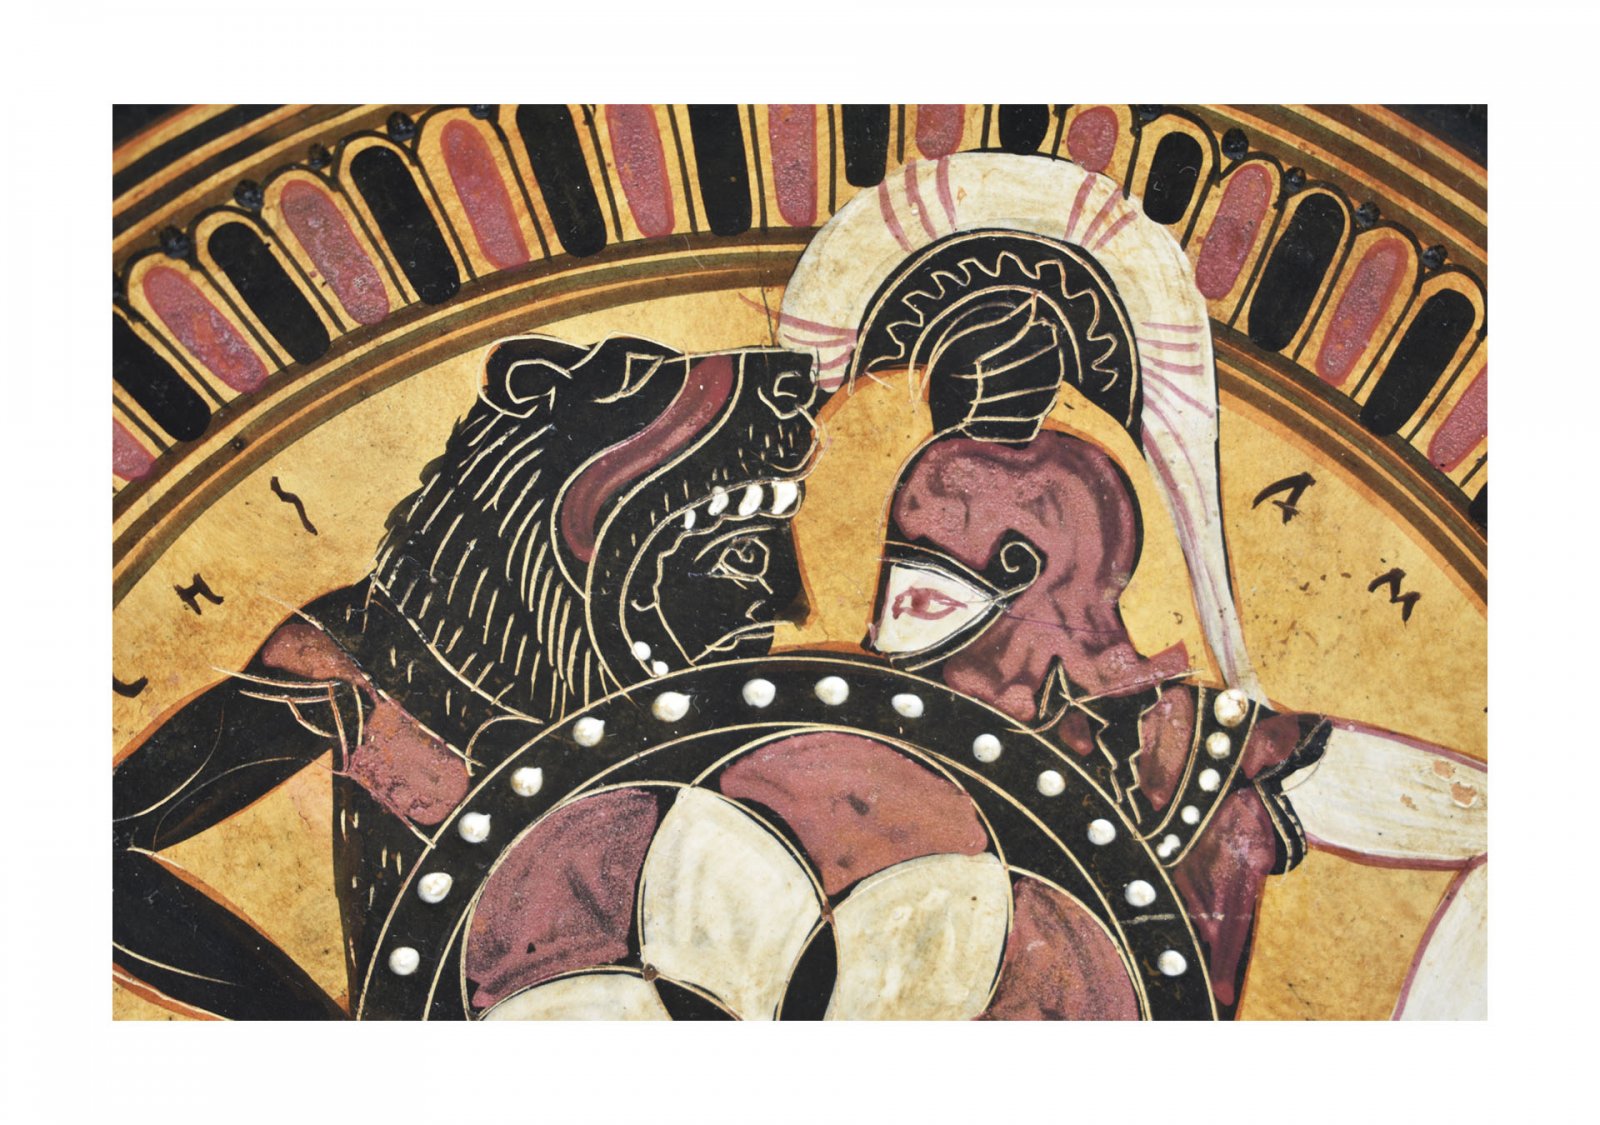 Greek ceramic plate depicting Hercules and Amazon